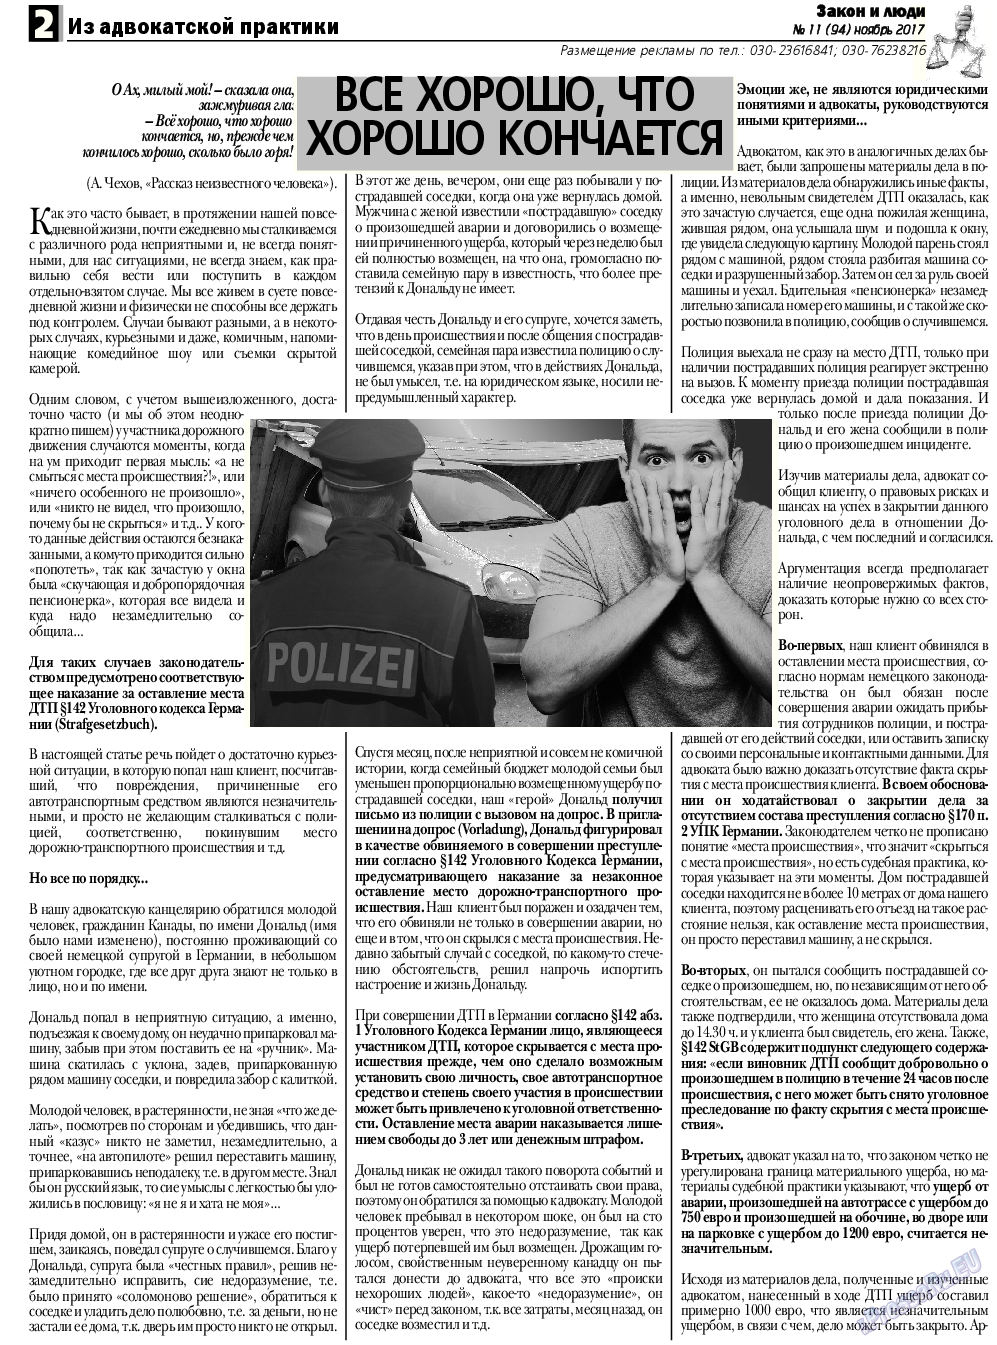 Закон и люди, газета. 2017 №11 стр.2